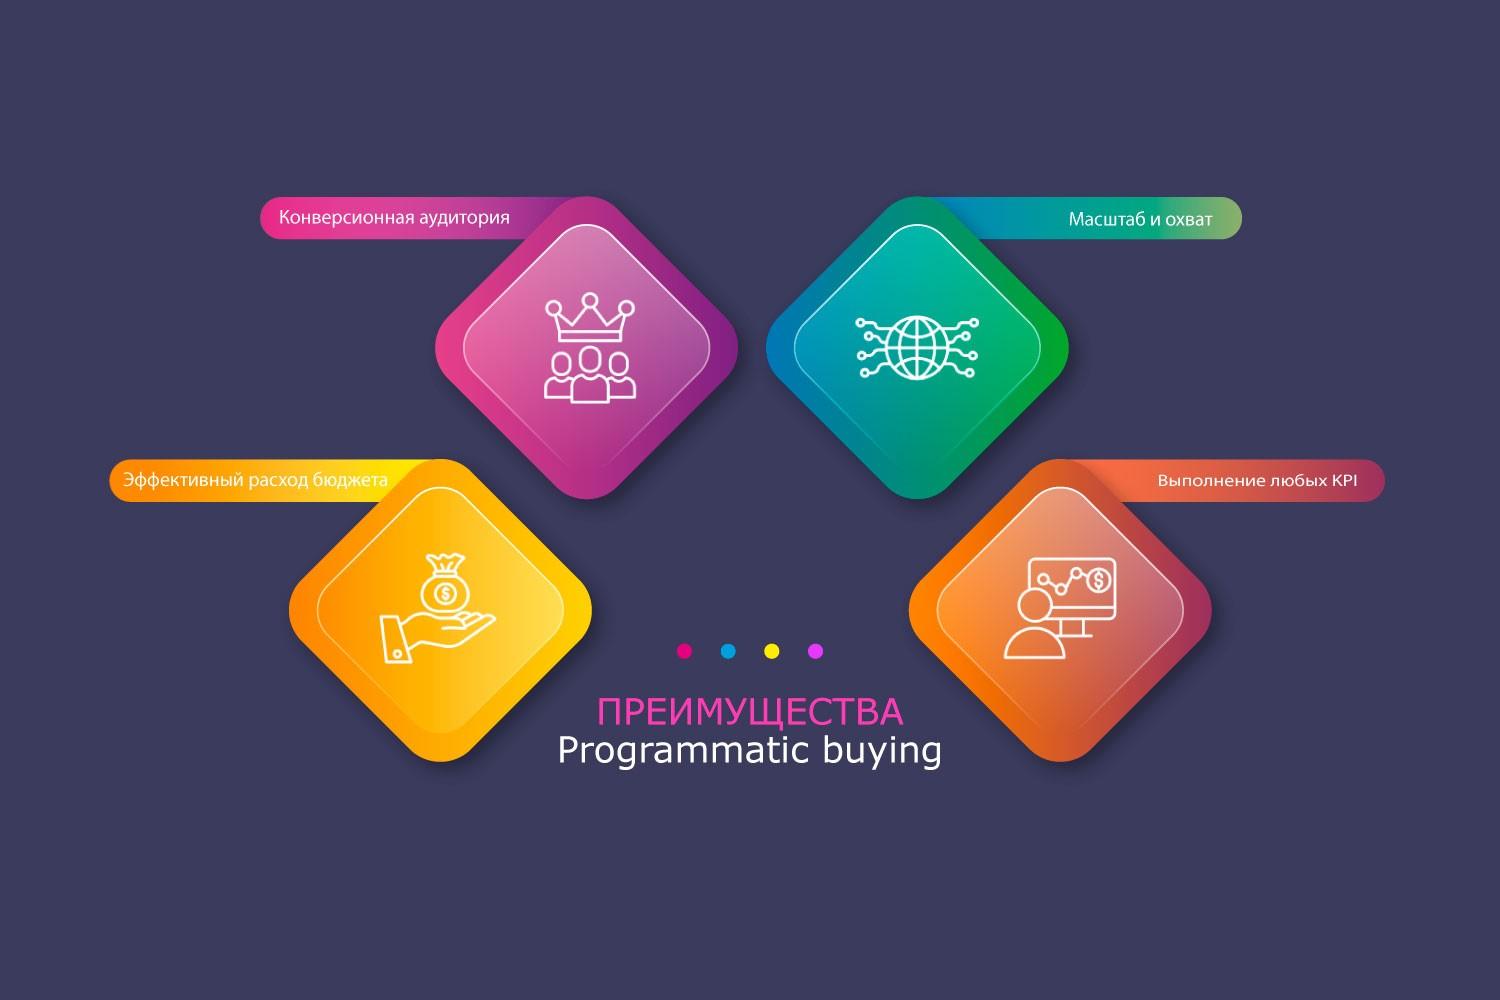 Основные преимущества Programmatic buying в виде инфографики от рекламного агентства Блондинка.Ру